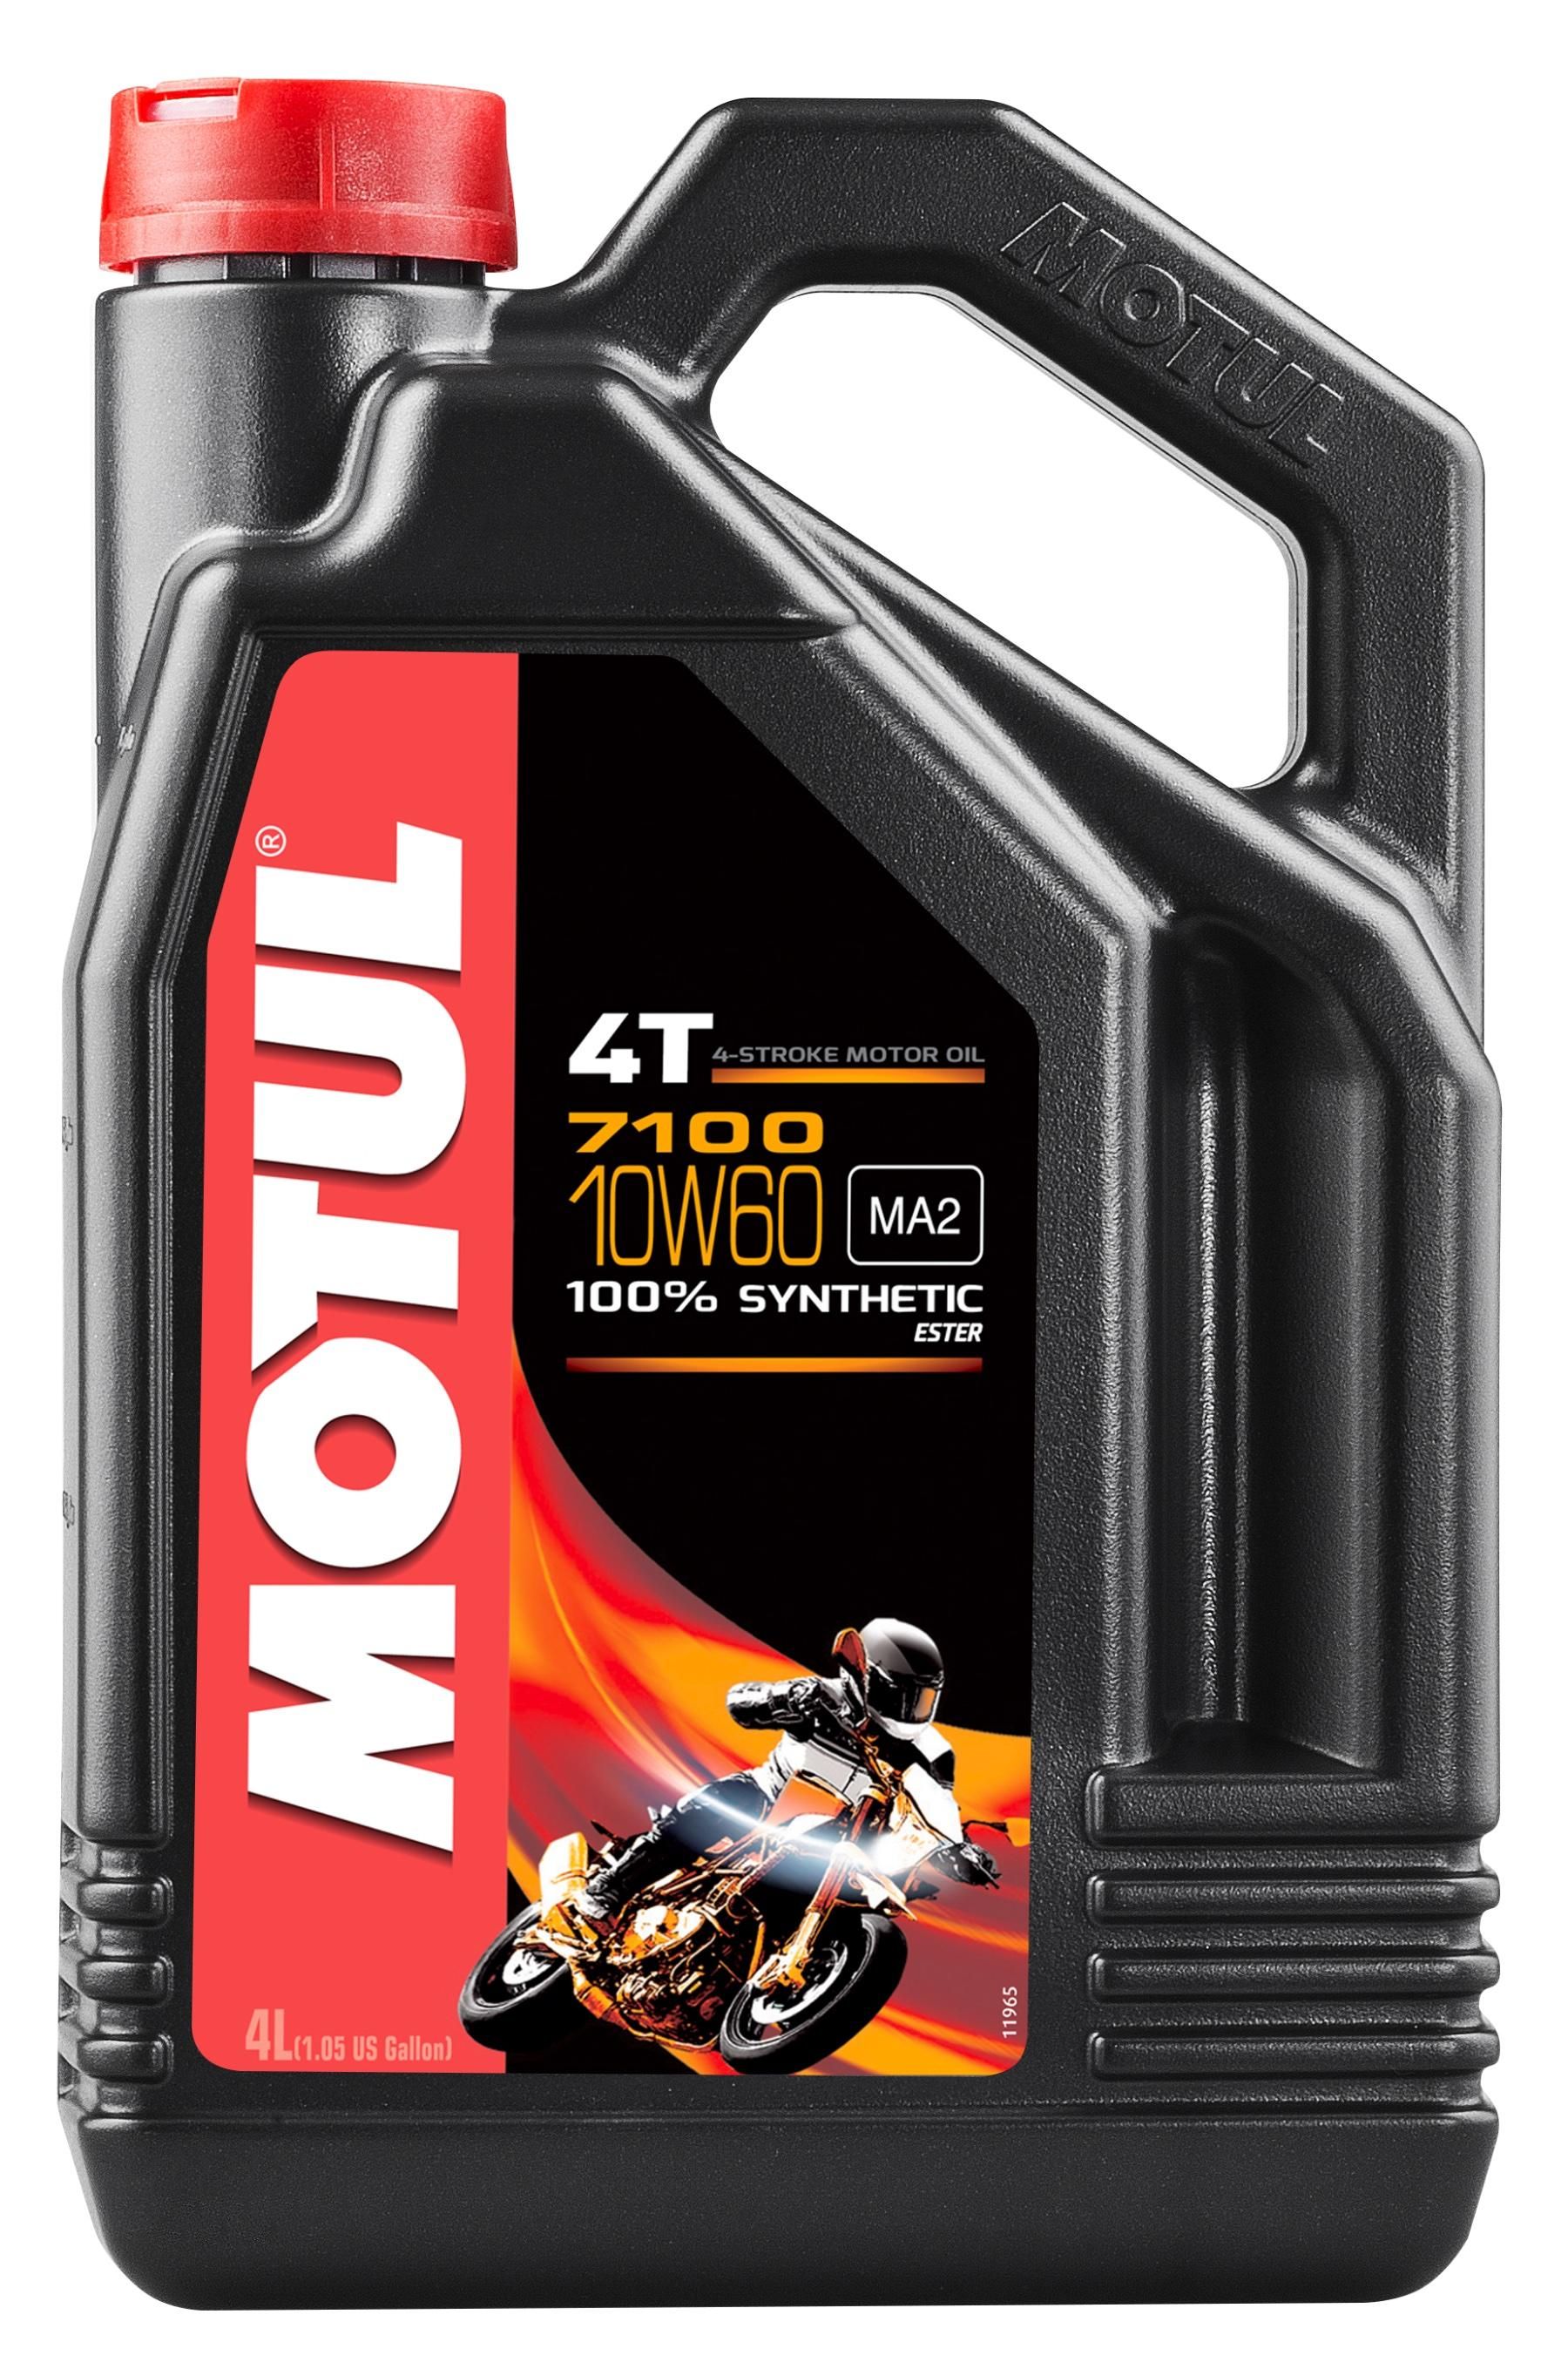 Моторное масло MOTUL 7100 4T 10W-60, 4 литра 10W60 (845541 / 104101)